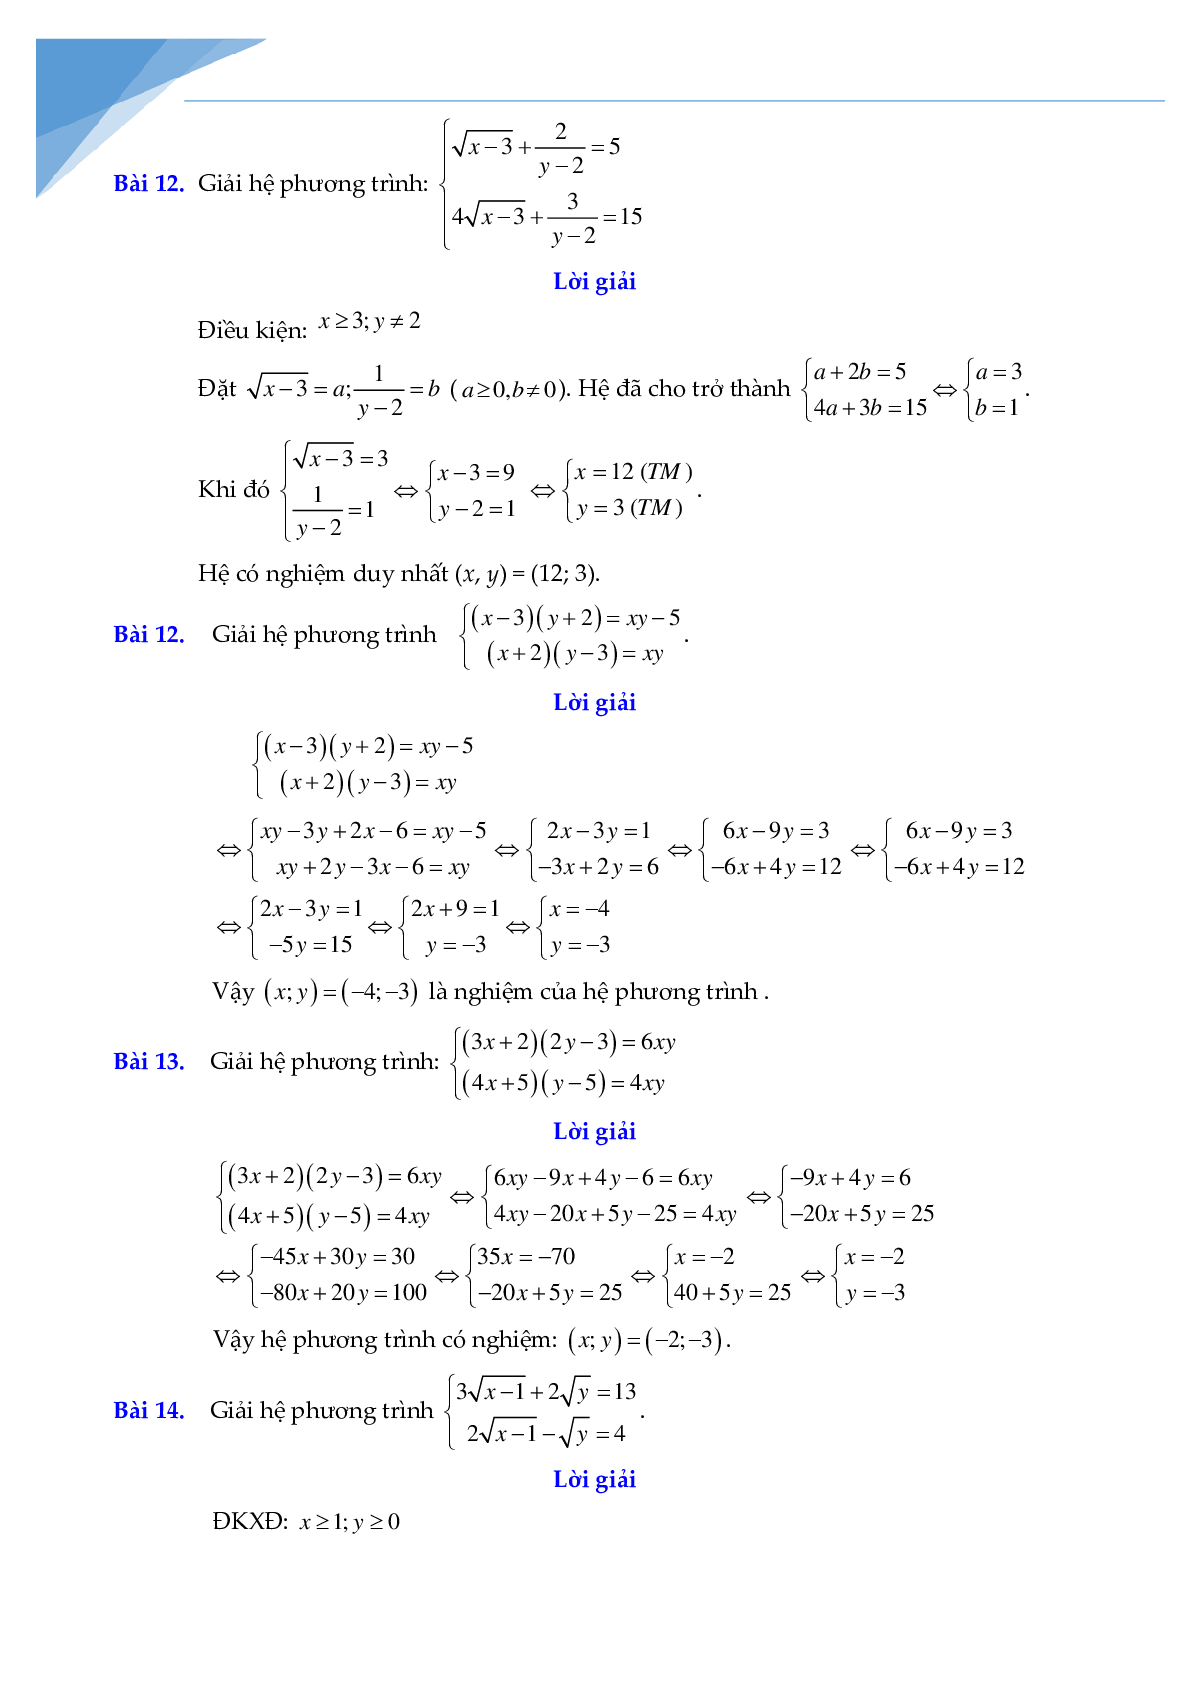 Chuyên đề hệ phương trình bồi dưỡng học sinh giỏi toán (trang 7)